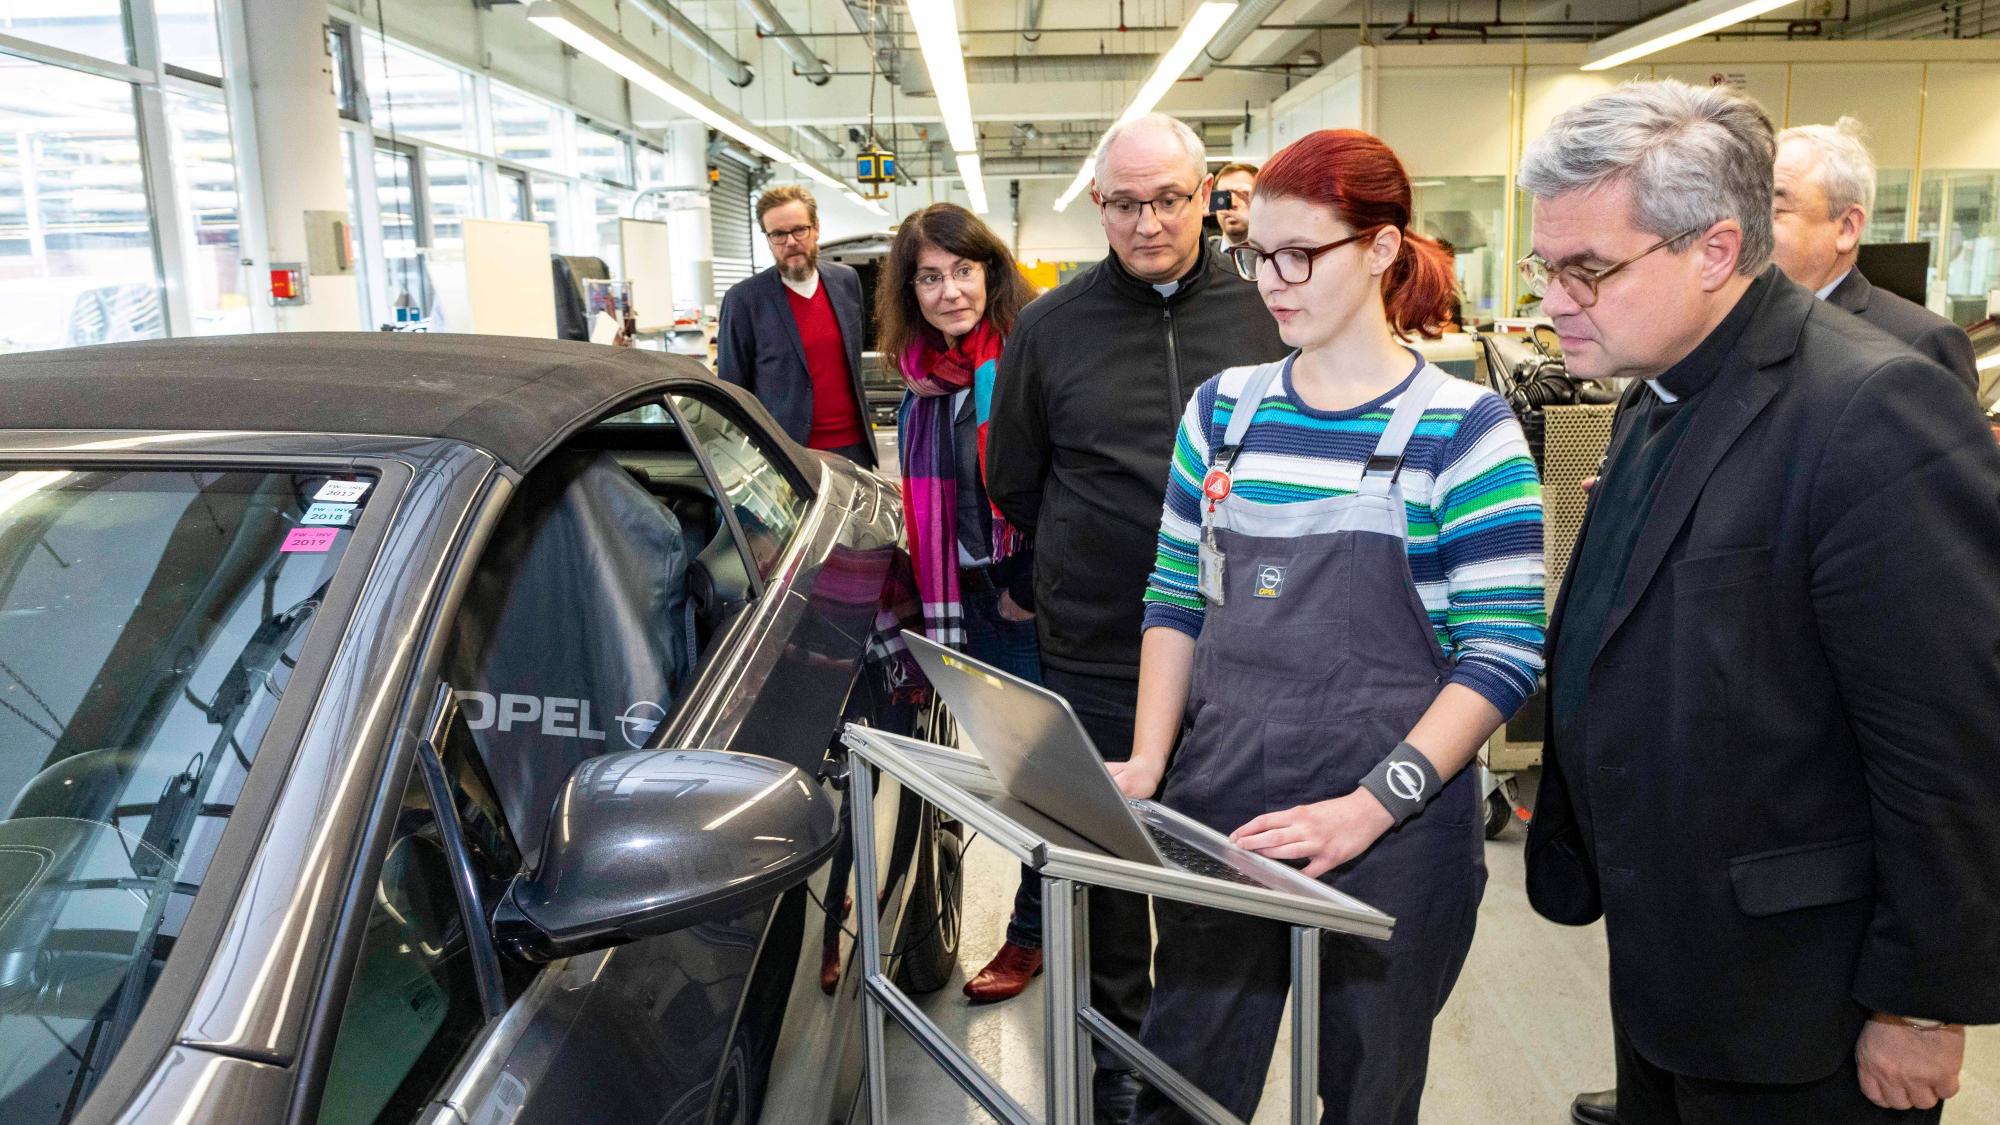 Rüsselsheim, 21.11.2019: Weihbischof Udo Markus Bentz (r.) im Opel-Ausbildungszentrum im Gespräch mit Lena Heck (2.v.r.), die eine Ausbildung zur Kraftfahrzeugmechatronikerin absolviert.